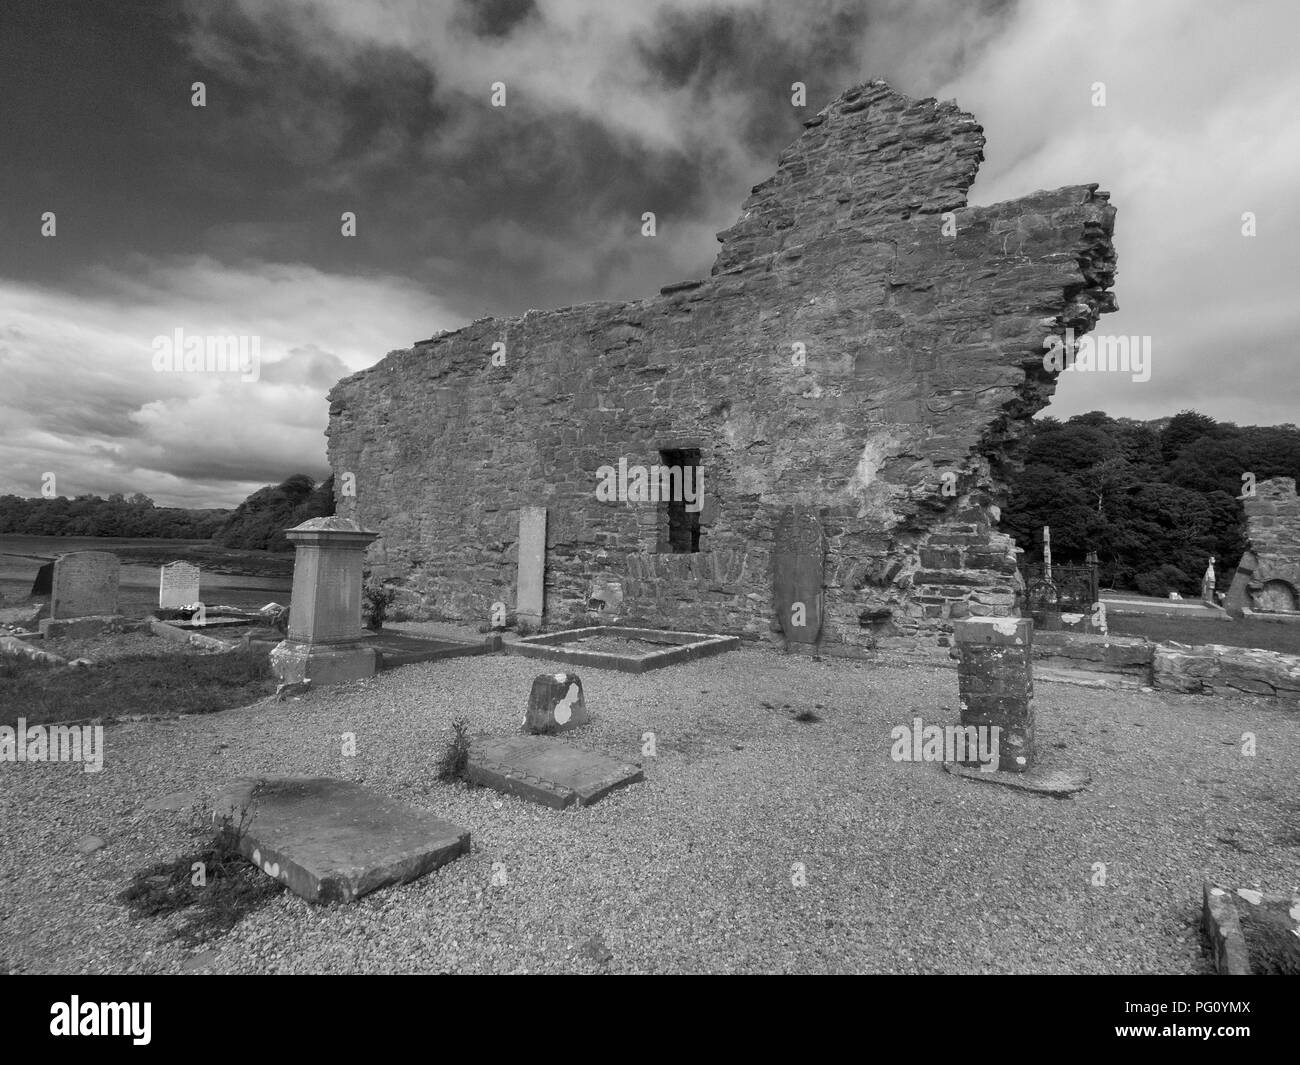 Le comté de Donegal, IRLANDE - 13 août 2018 : une photographie en noir et blanc de l'intérieur des ruines de l'abbaye de Donegal qui est un couvent franciscain. Banque D'Images